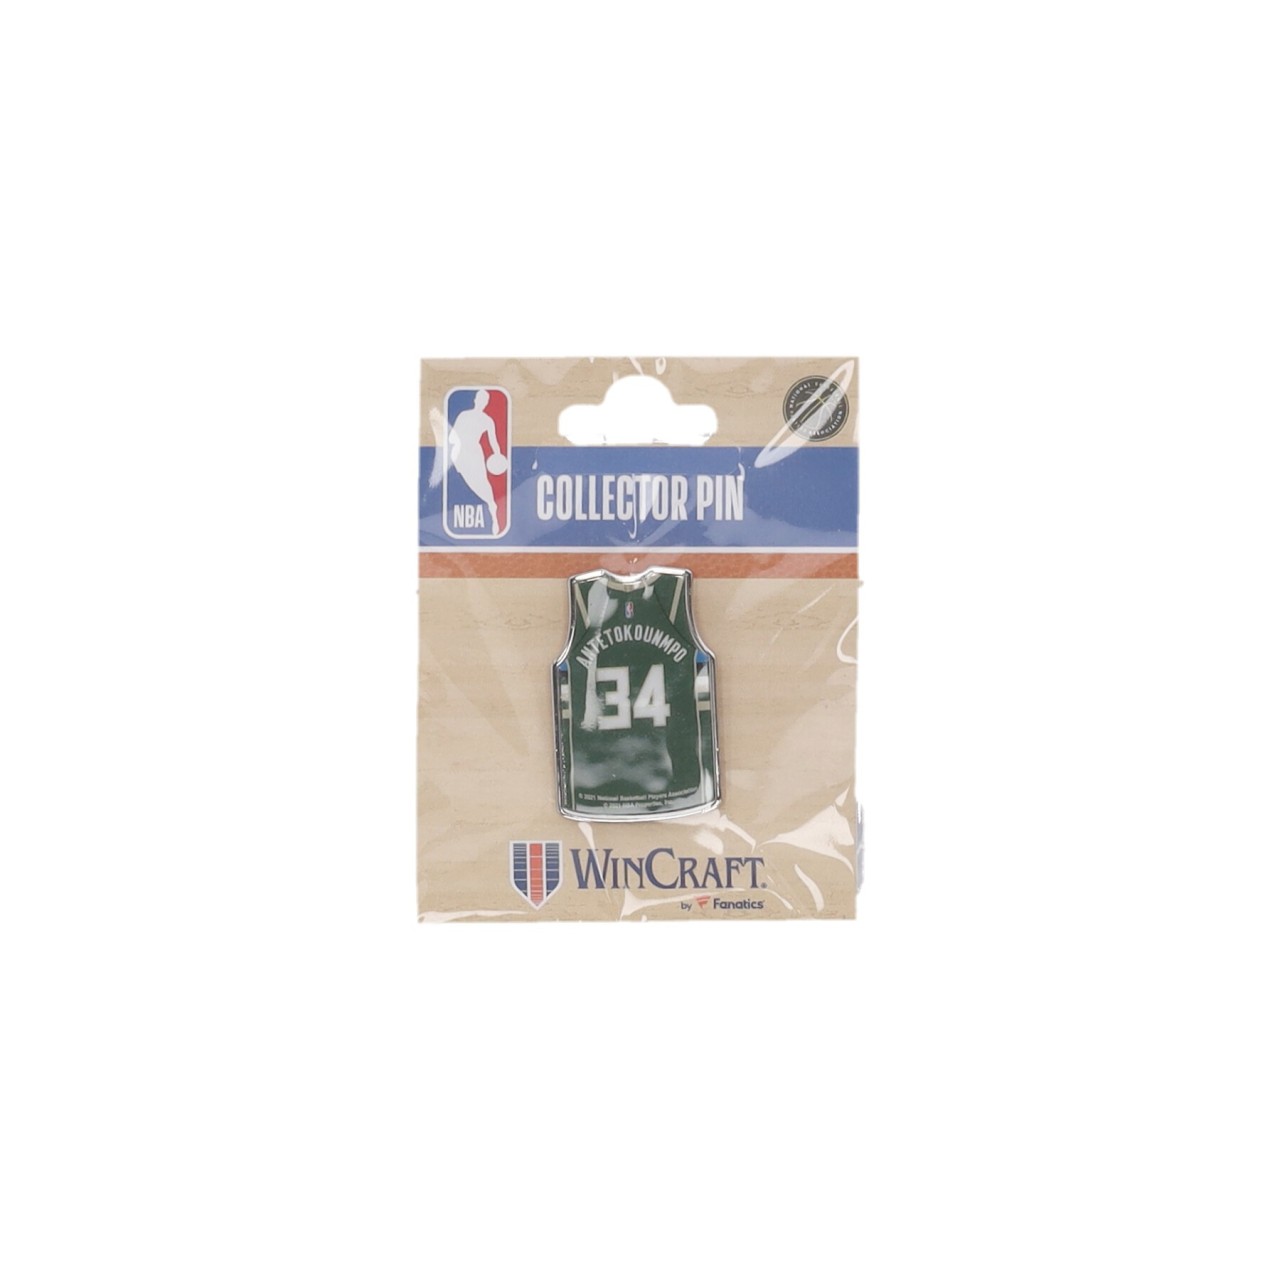 WINCRAFT NBA COLLECTOR PIN NO 34 GIANNIS ANTETOKOUNMPO MILBUC 44187321